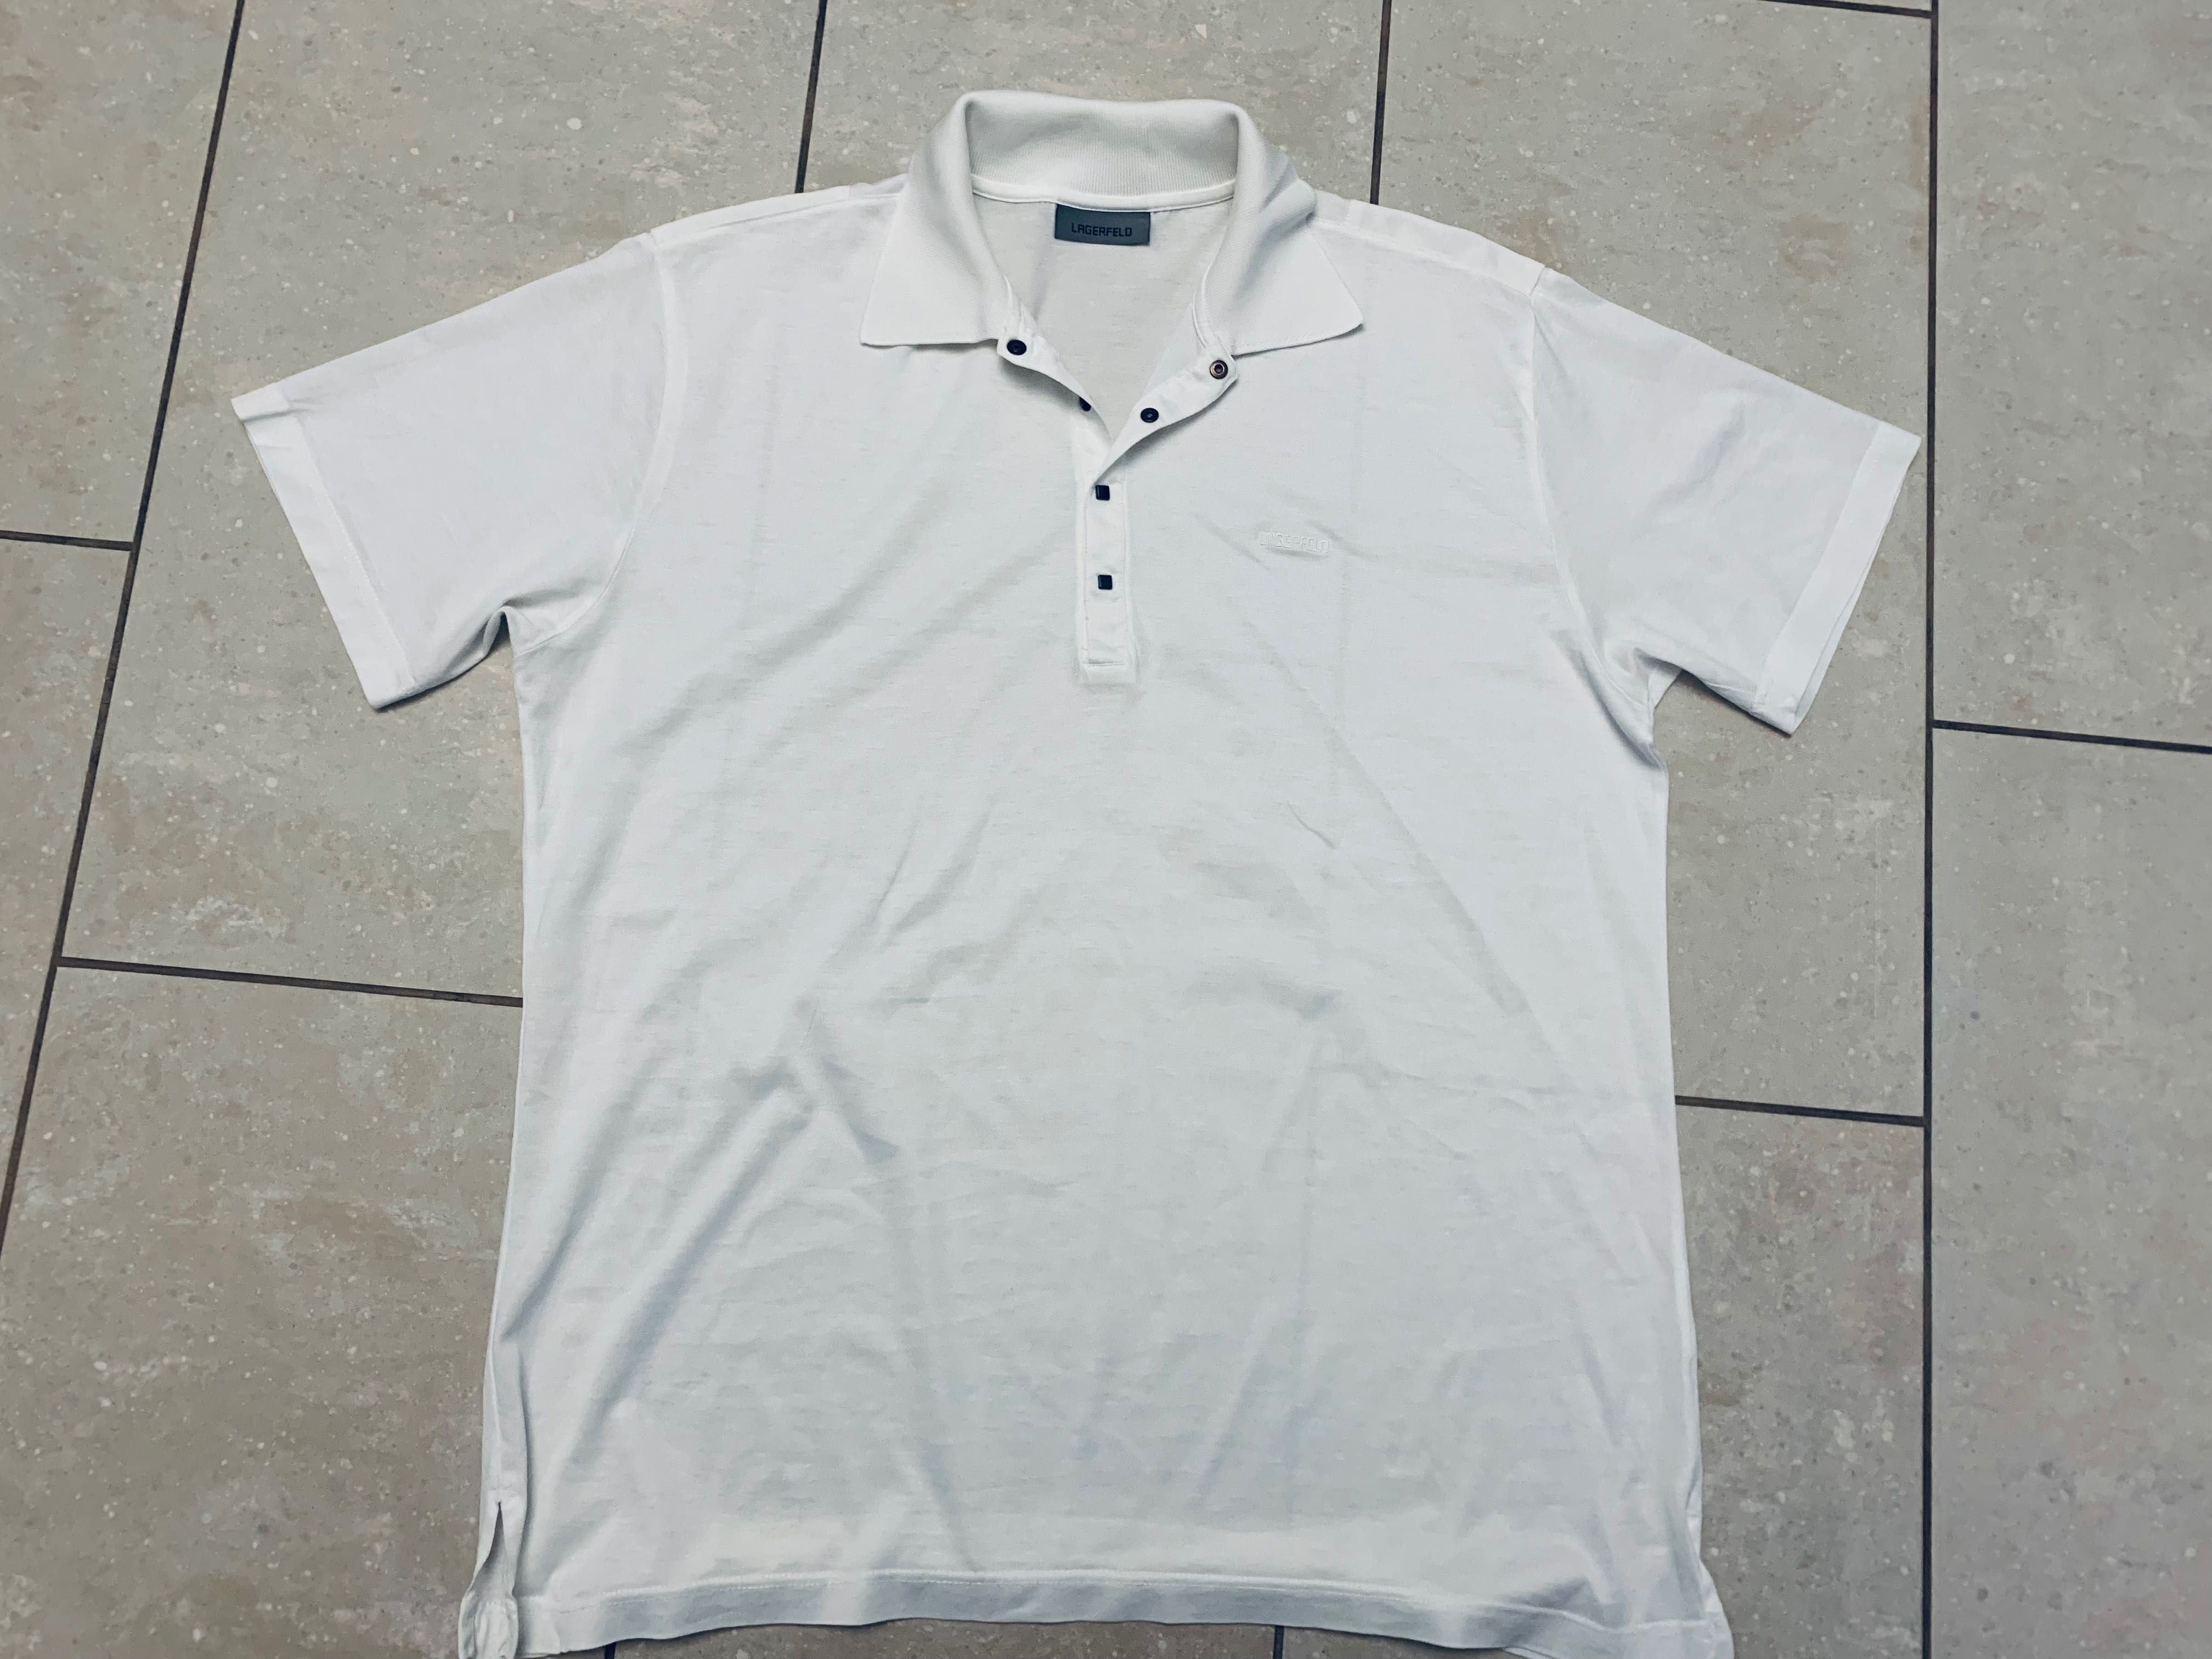 Karl Lagerfeld koszulka, męski T- Shirt XL/XXL polo, bawełna, jak nowa